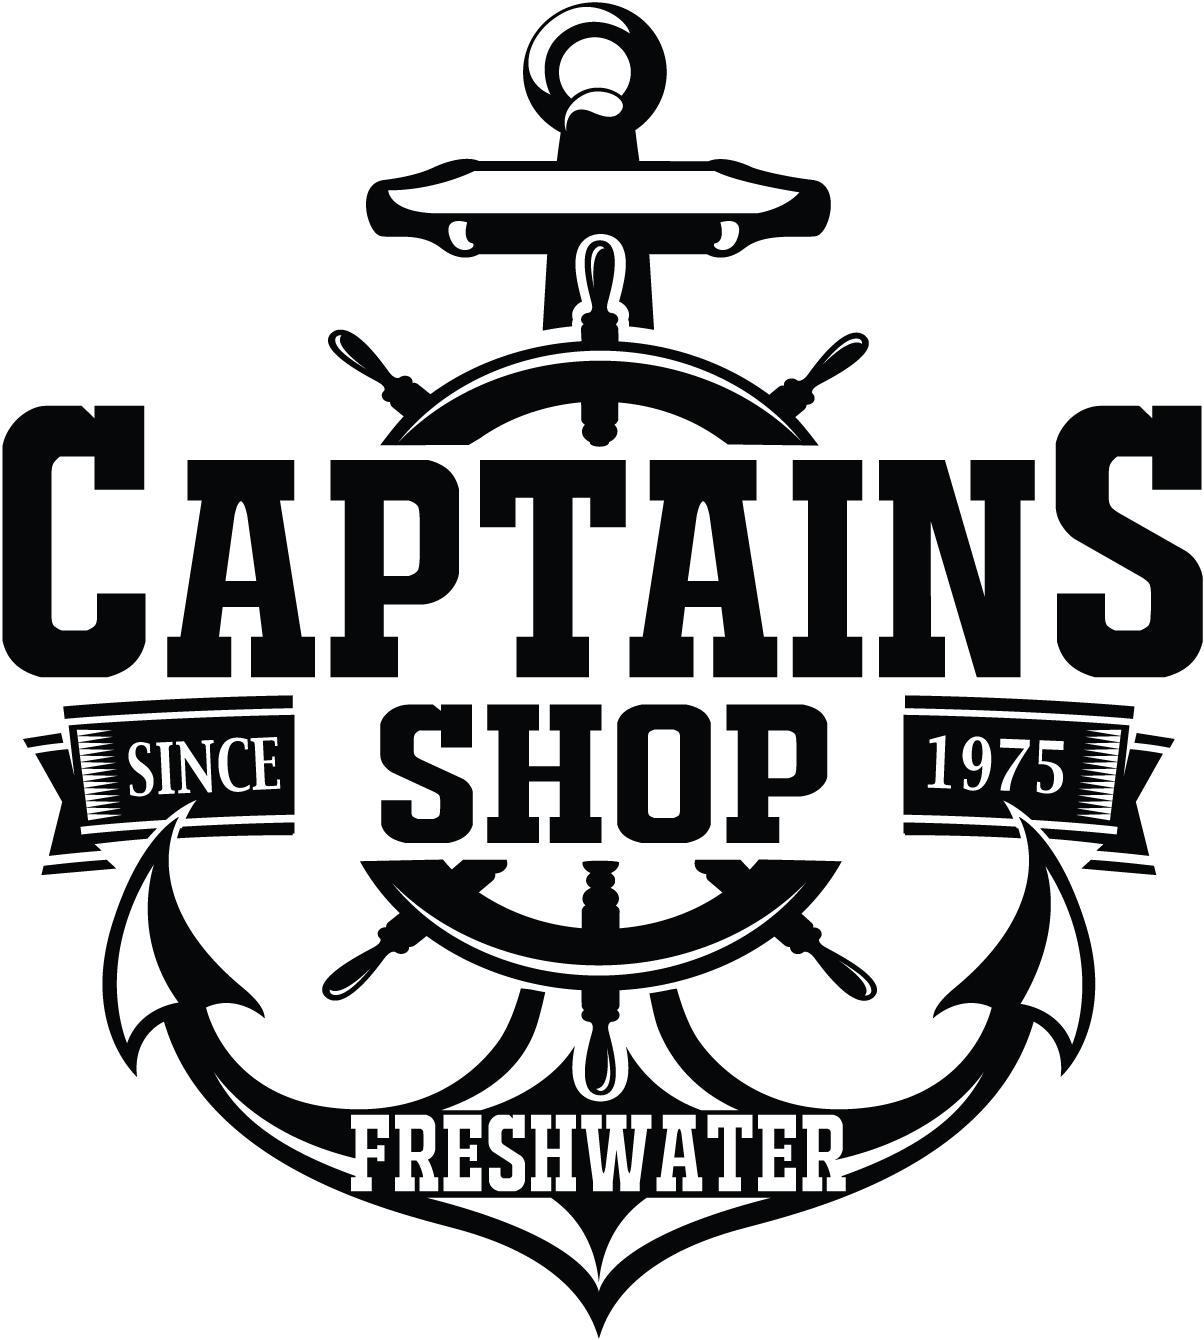 Captains Shop